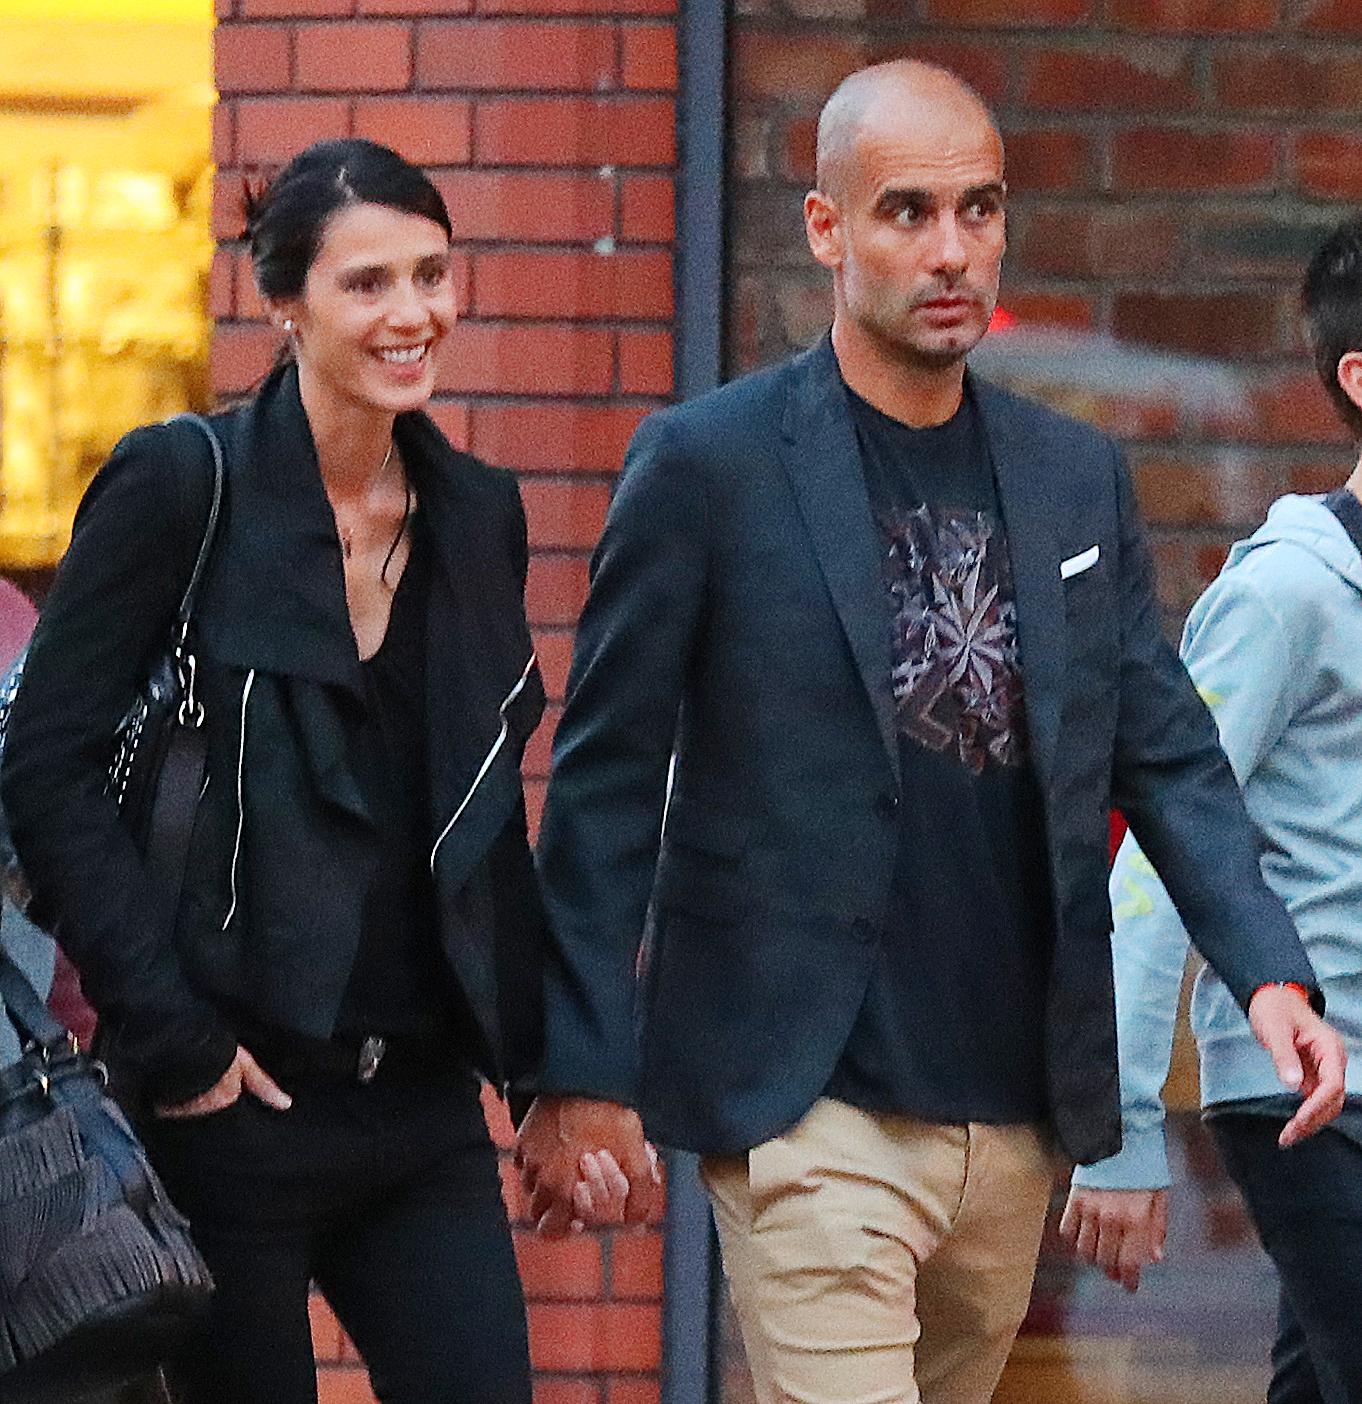 Cristina Serra och Pep Guardiola syns på gatorna i Manchester.